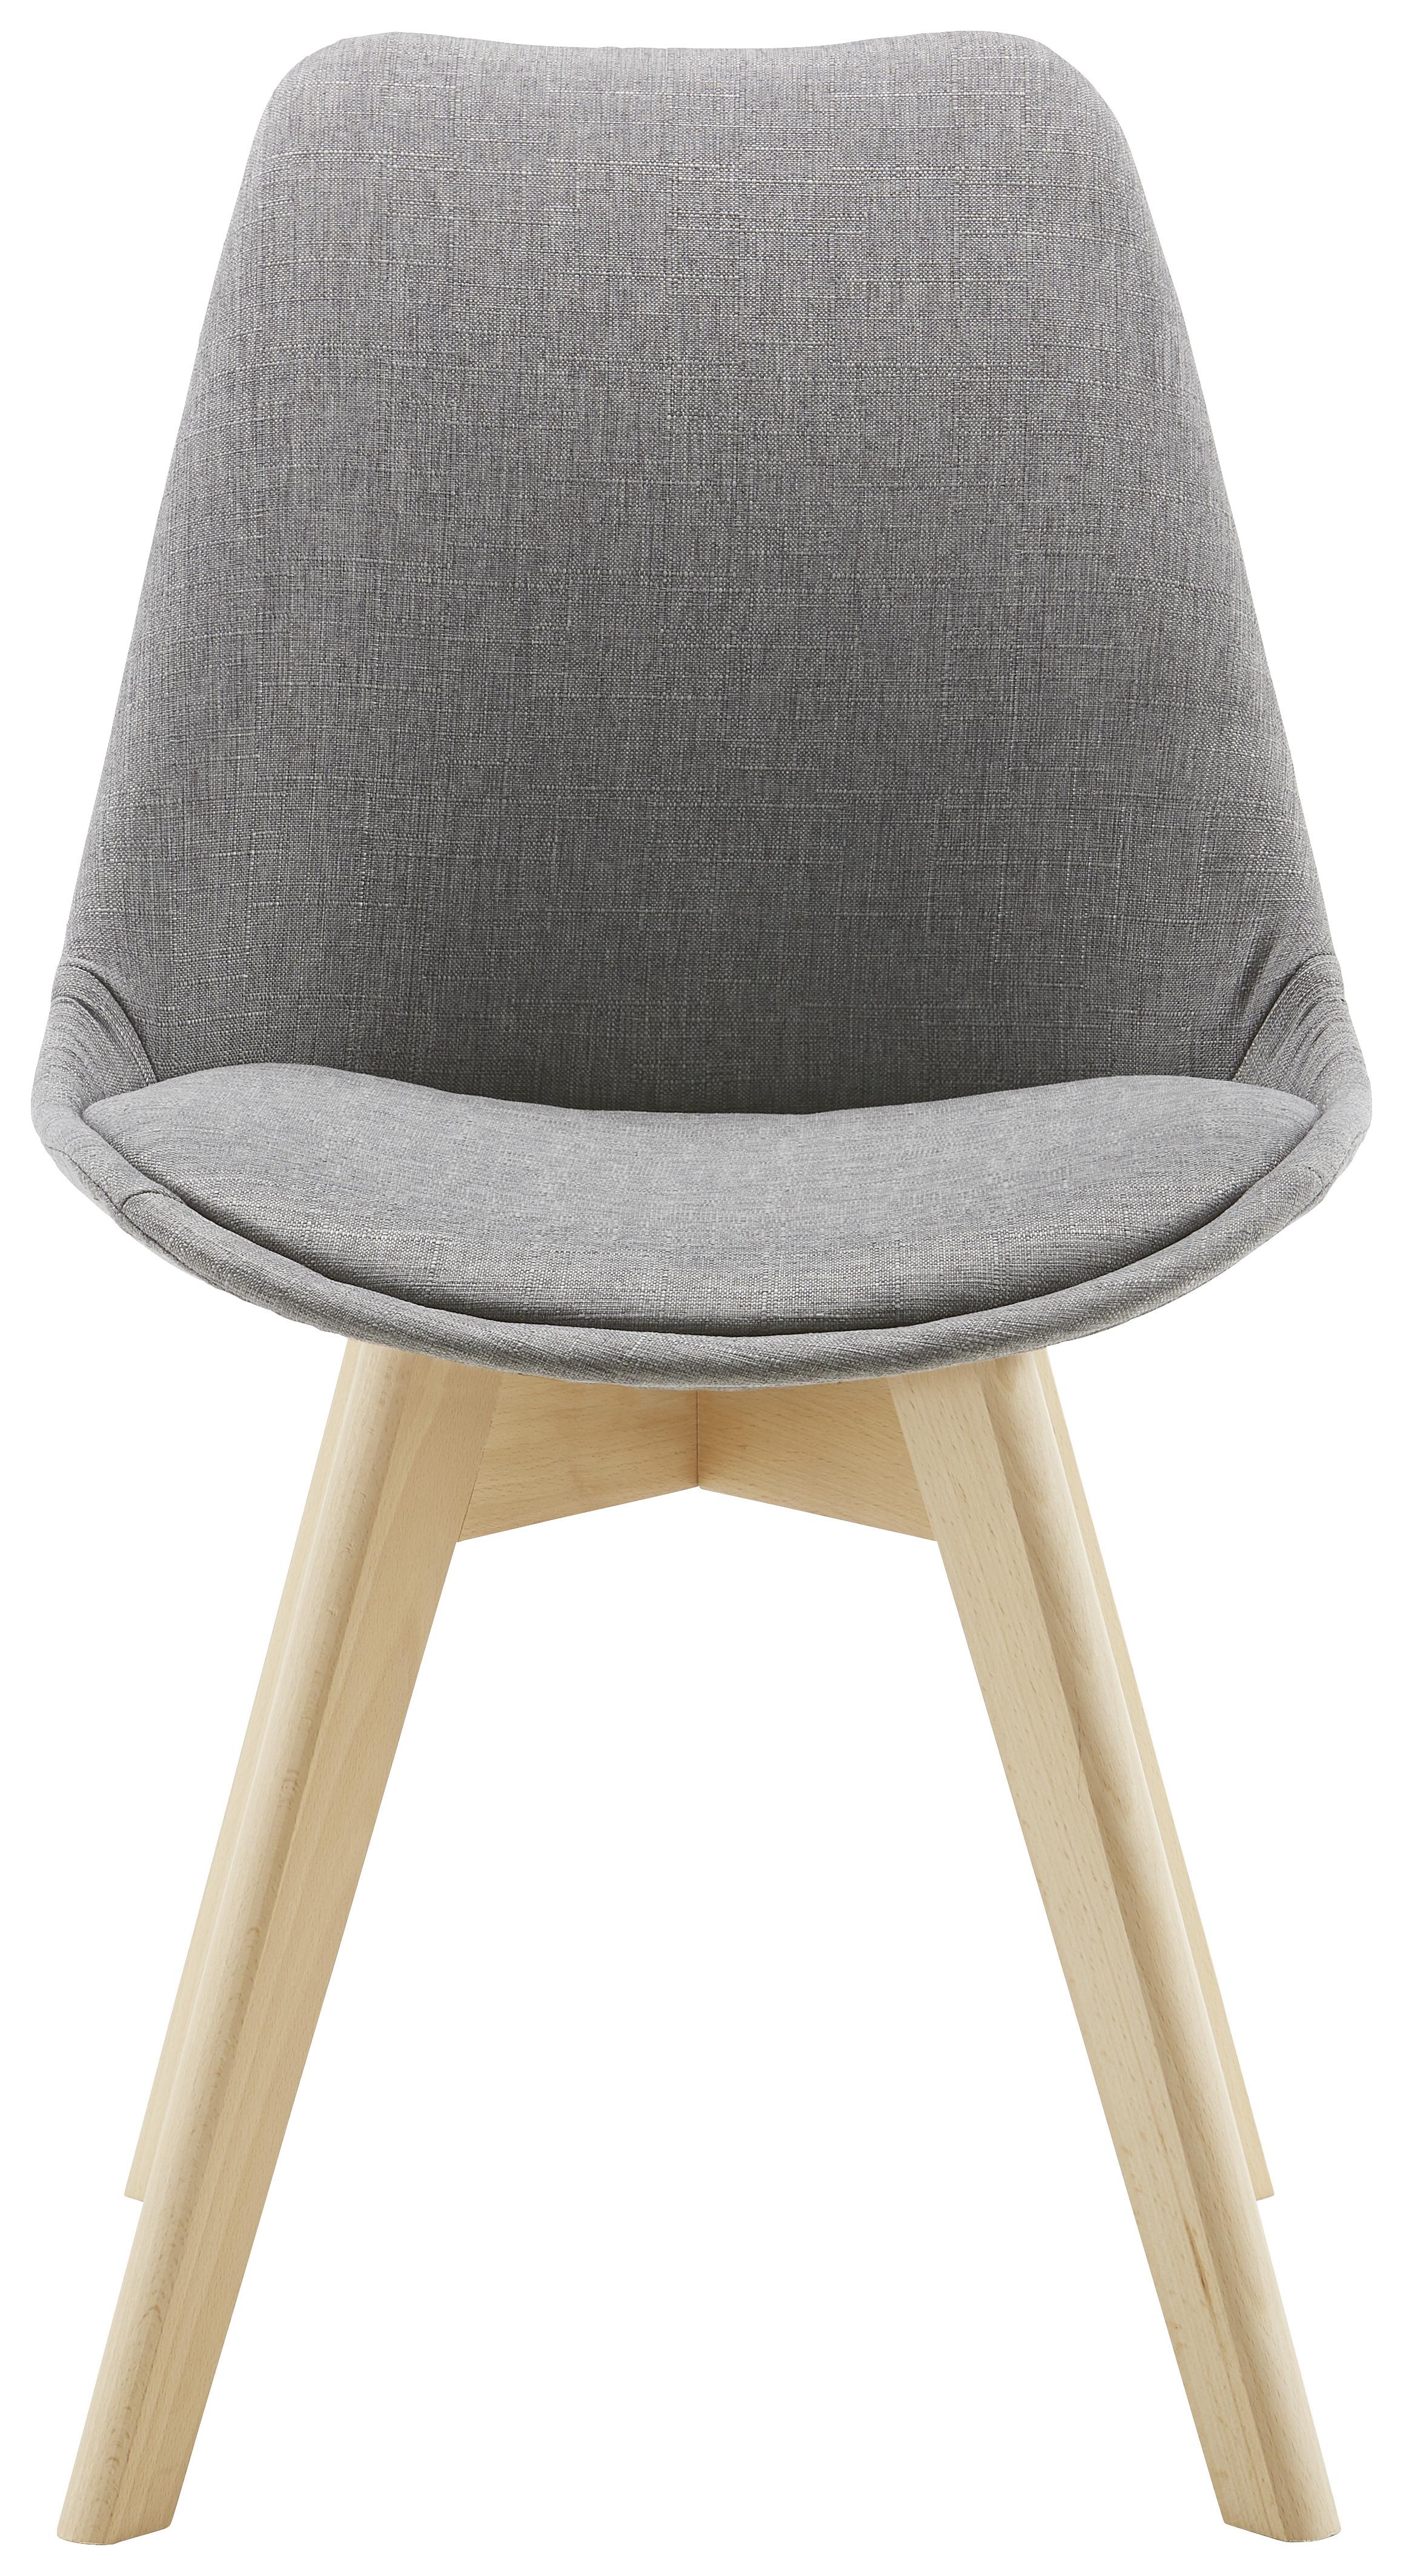 Jídelní Židle Rocksi - šedá/barvy buku, Moderní, dřevo/textil (48/82,5/43cm) - Modern Living